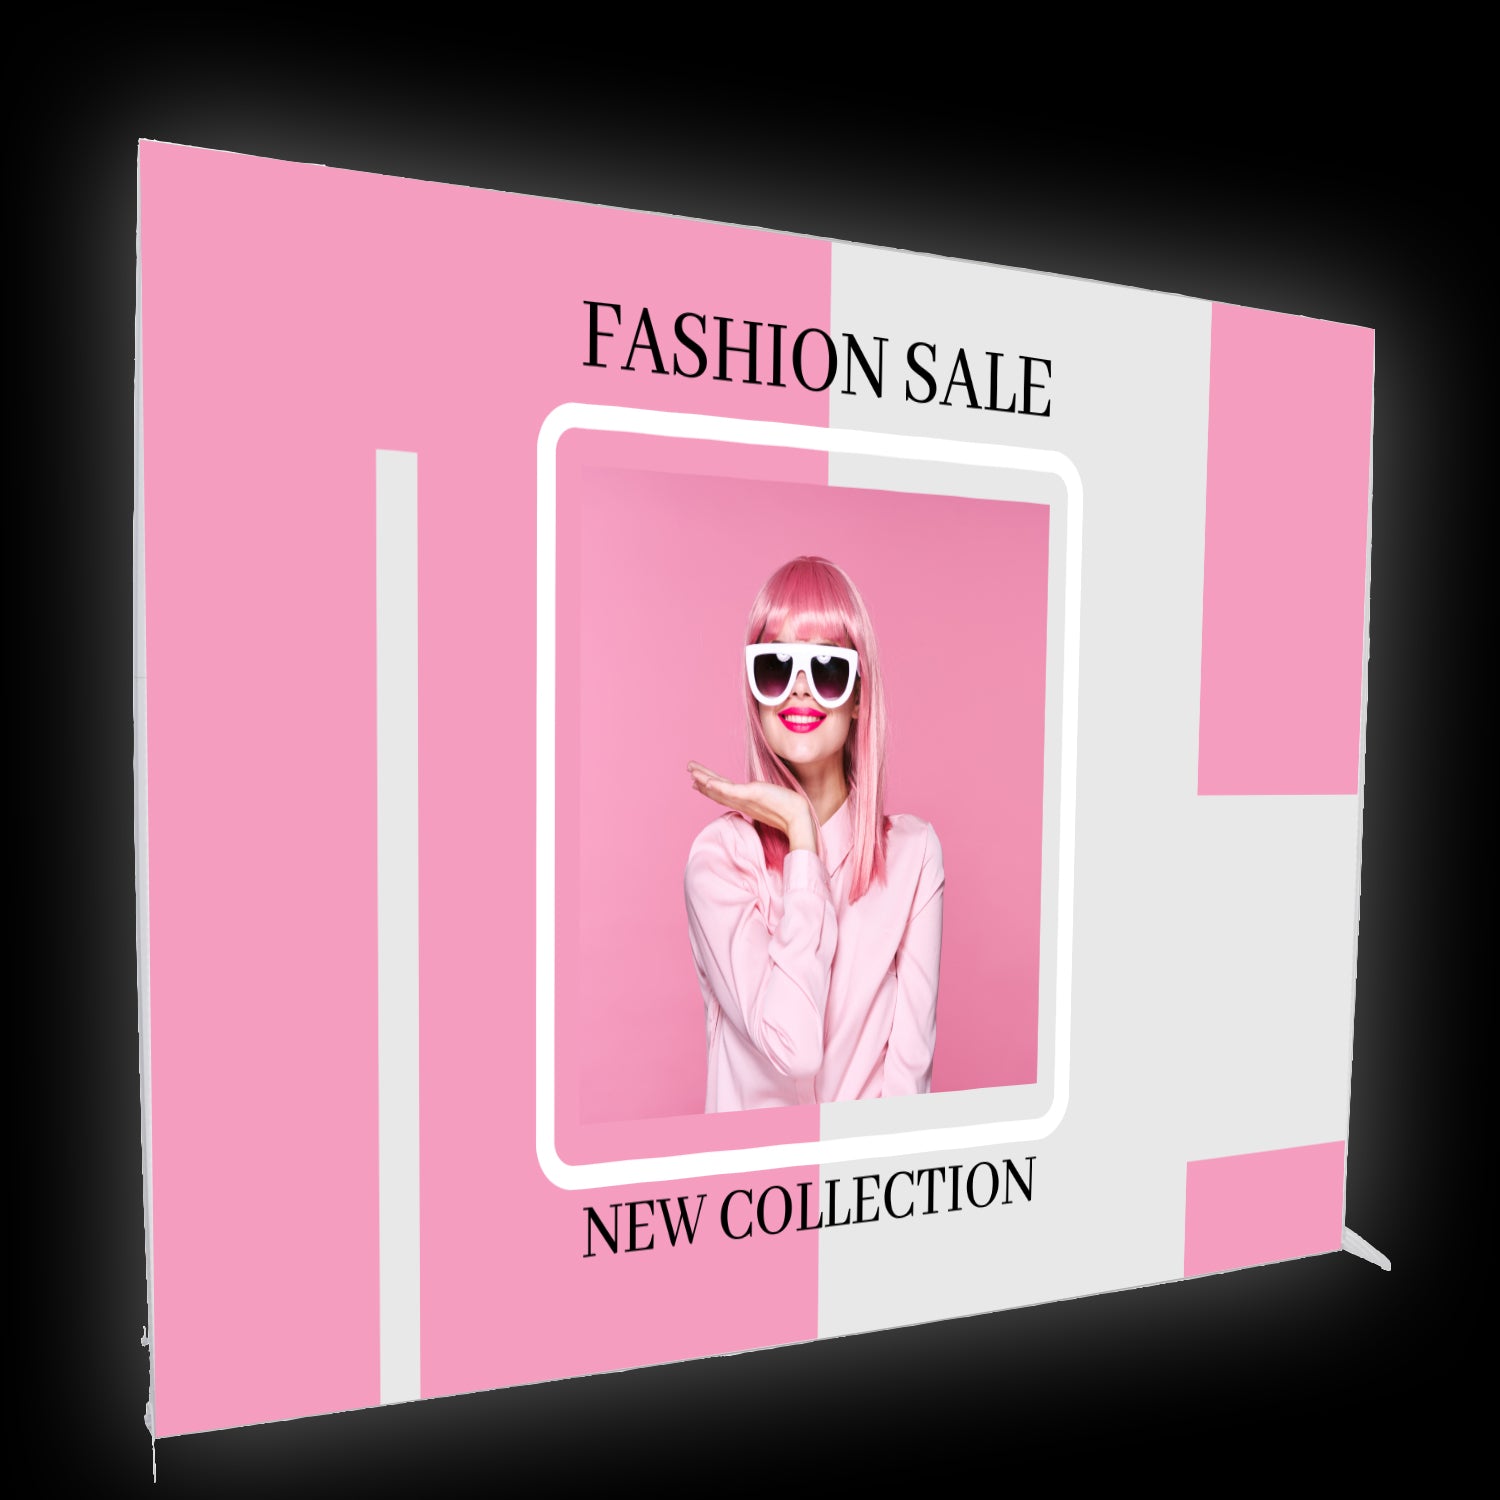 Mobile Messewand beleuchtet aus einem leichtem Kunststoffrahmen. Als brillantem Textildruck sieht man ein Fashion Design mit einem Model in pink.